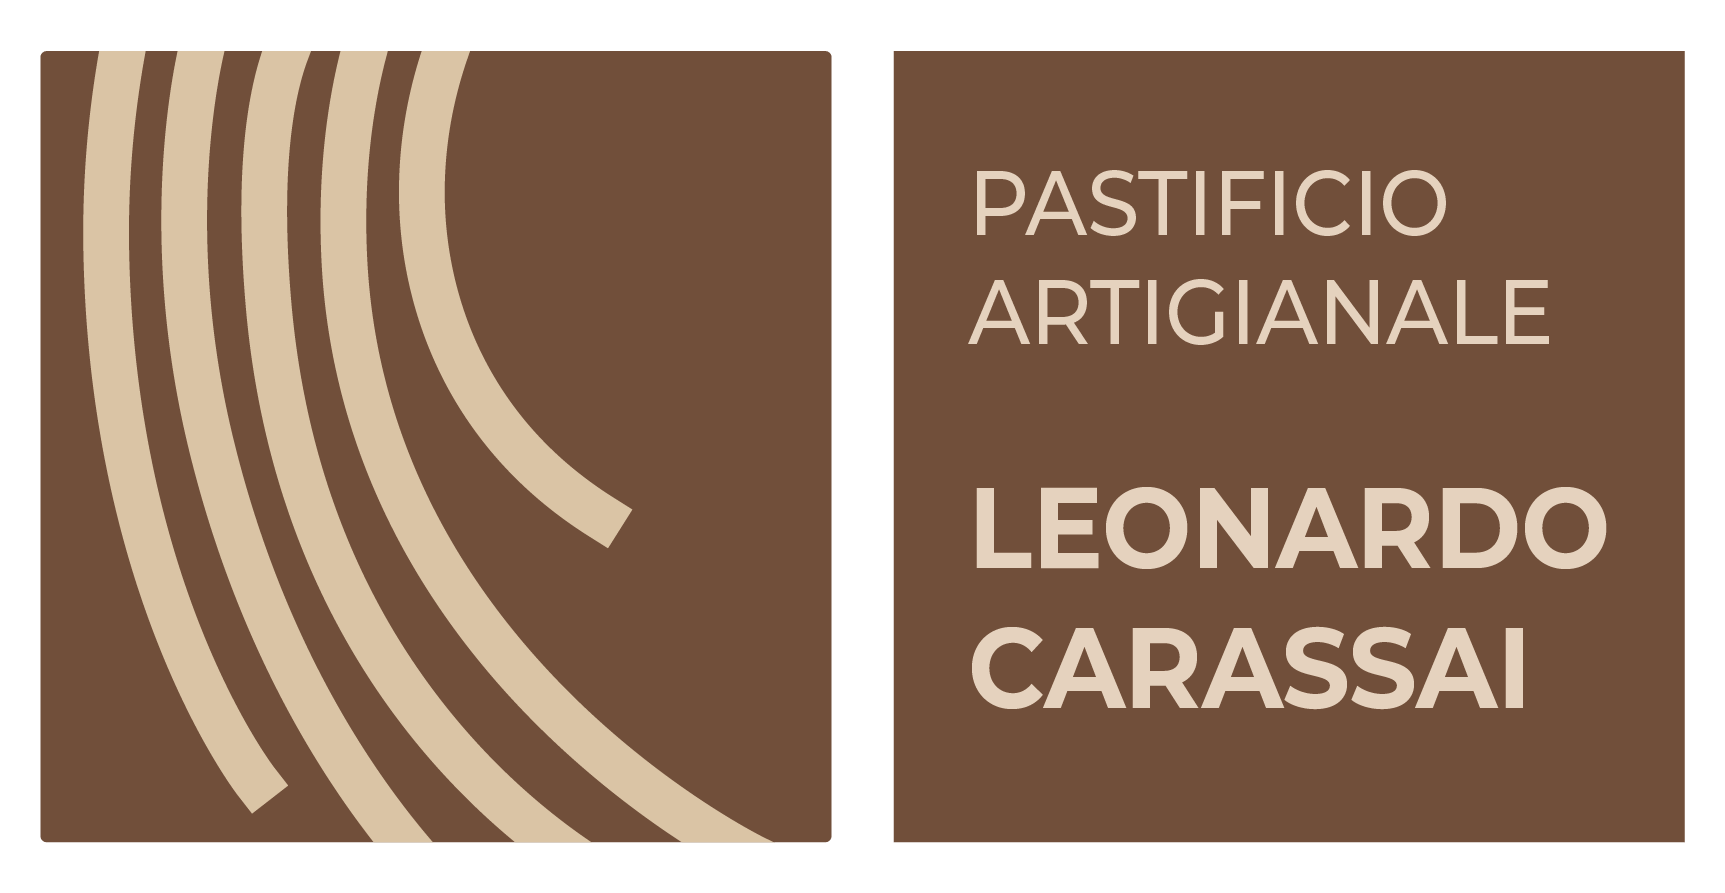 Leonardo Carrassai